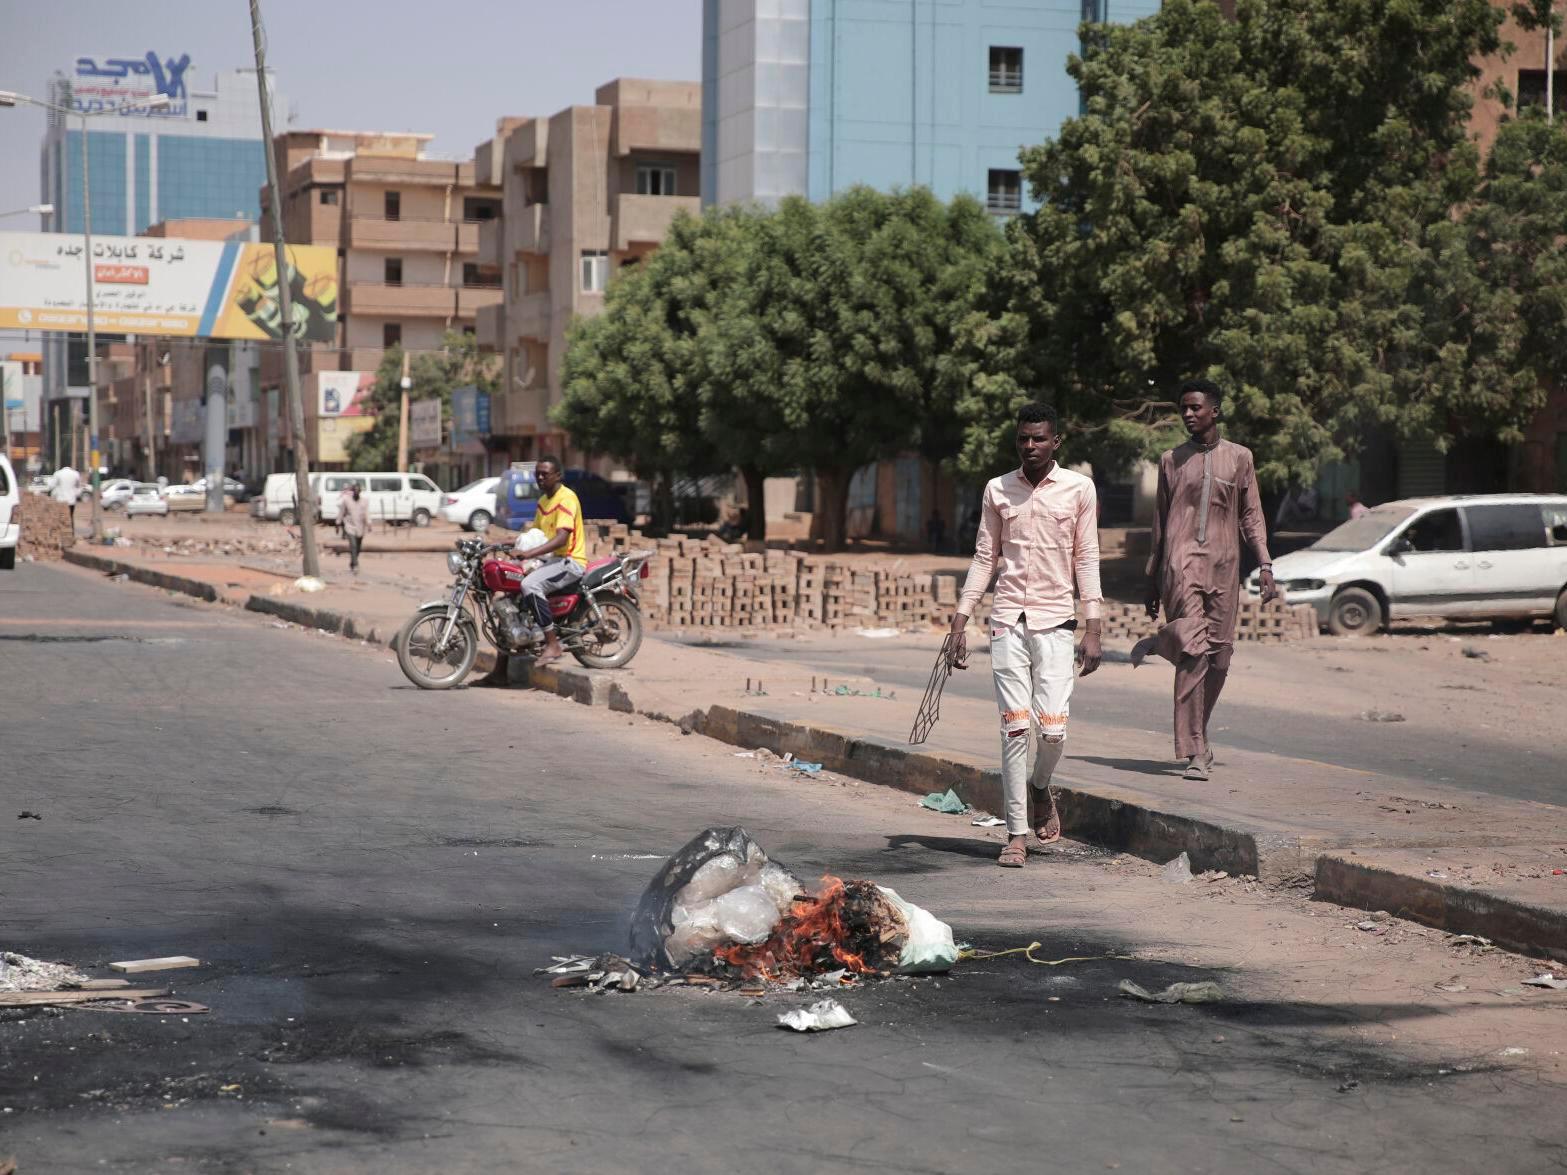 U Sudanu sve napetije: Ubijeno je najmanje 11 osoba, hiljade izlaze na ulice